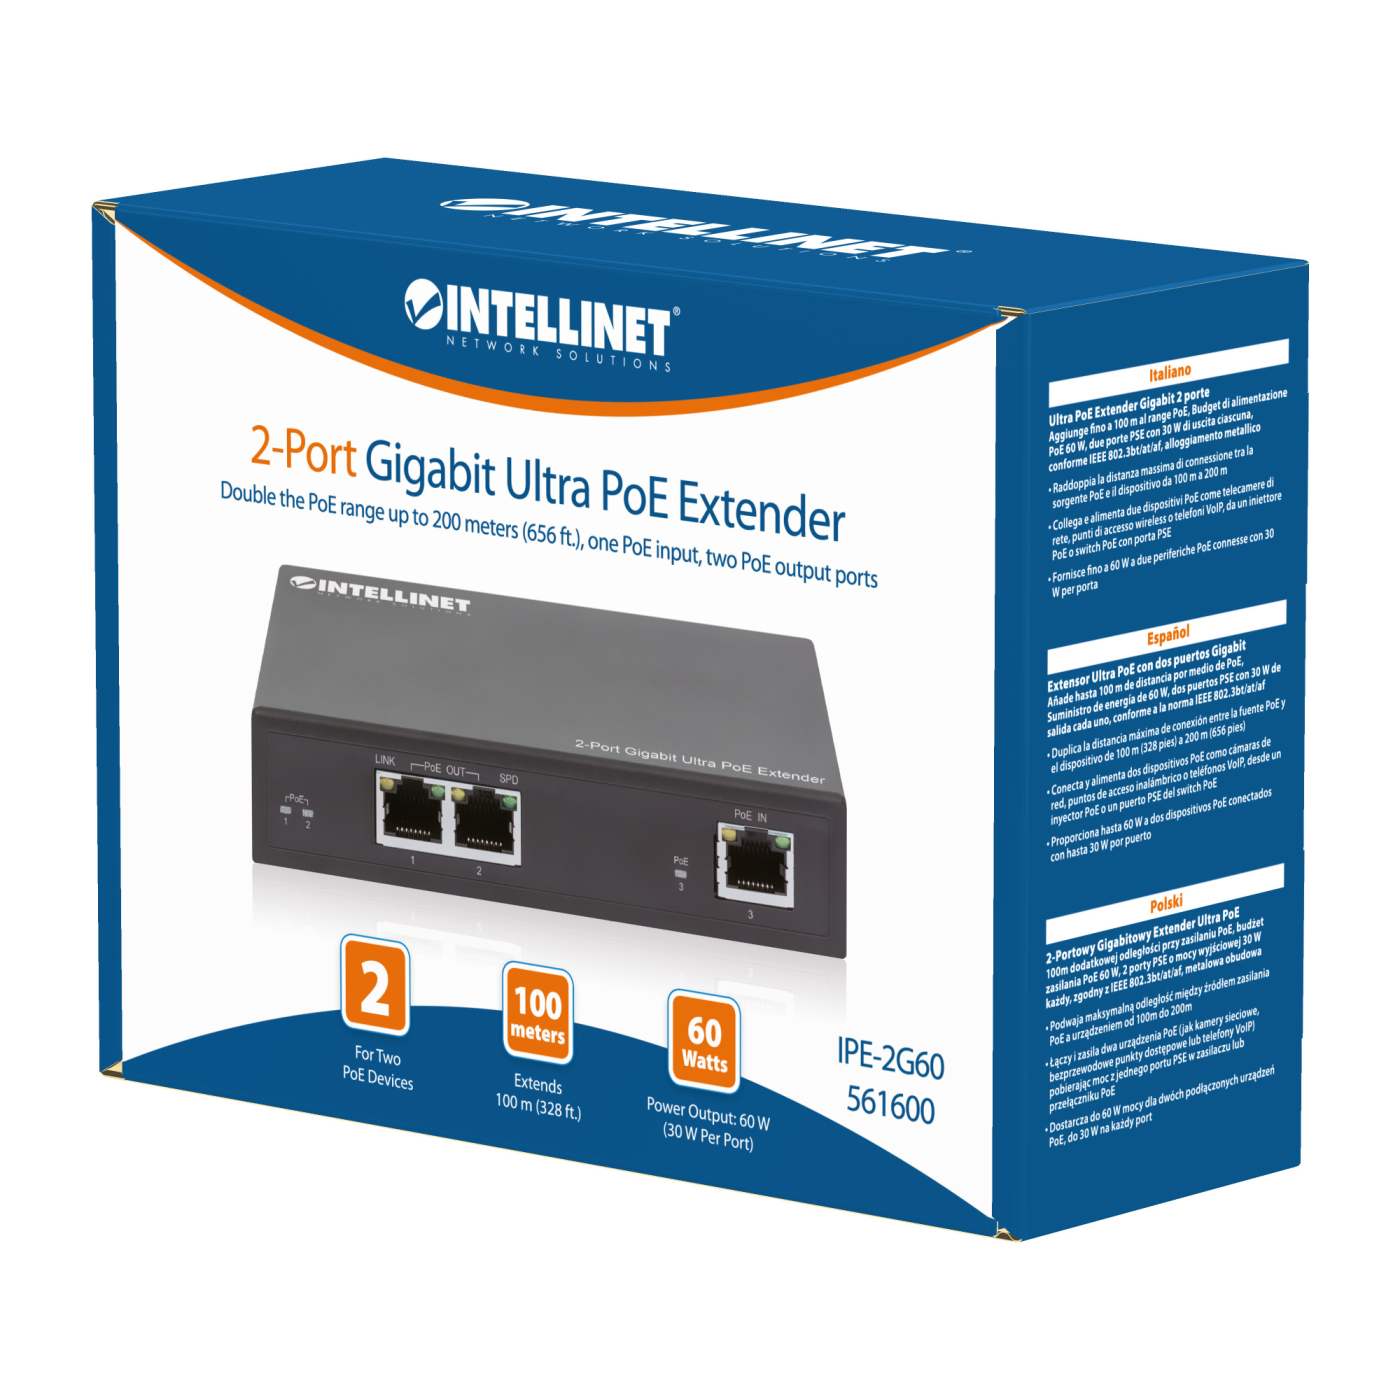 2-Port Gigabit Ultra PoE Extender Packaging Image 2